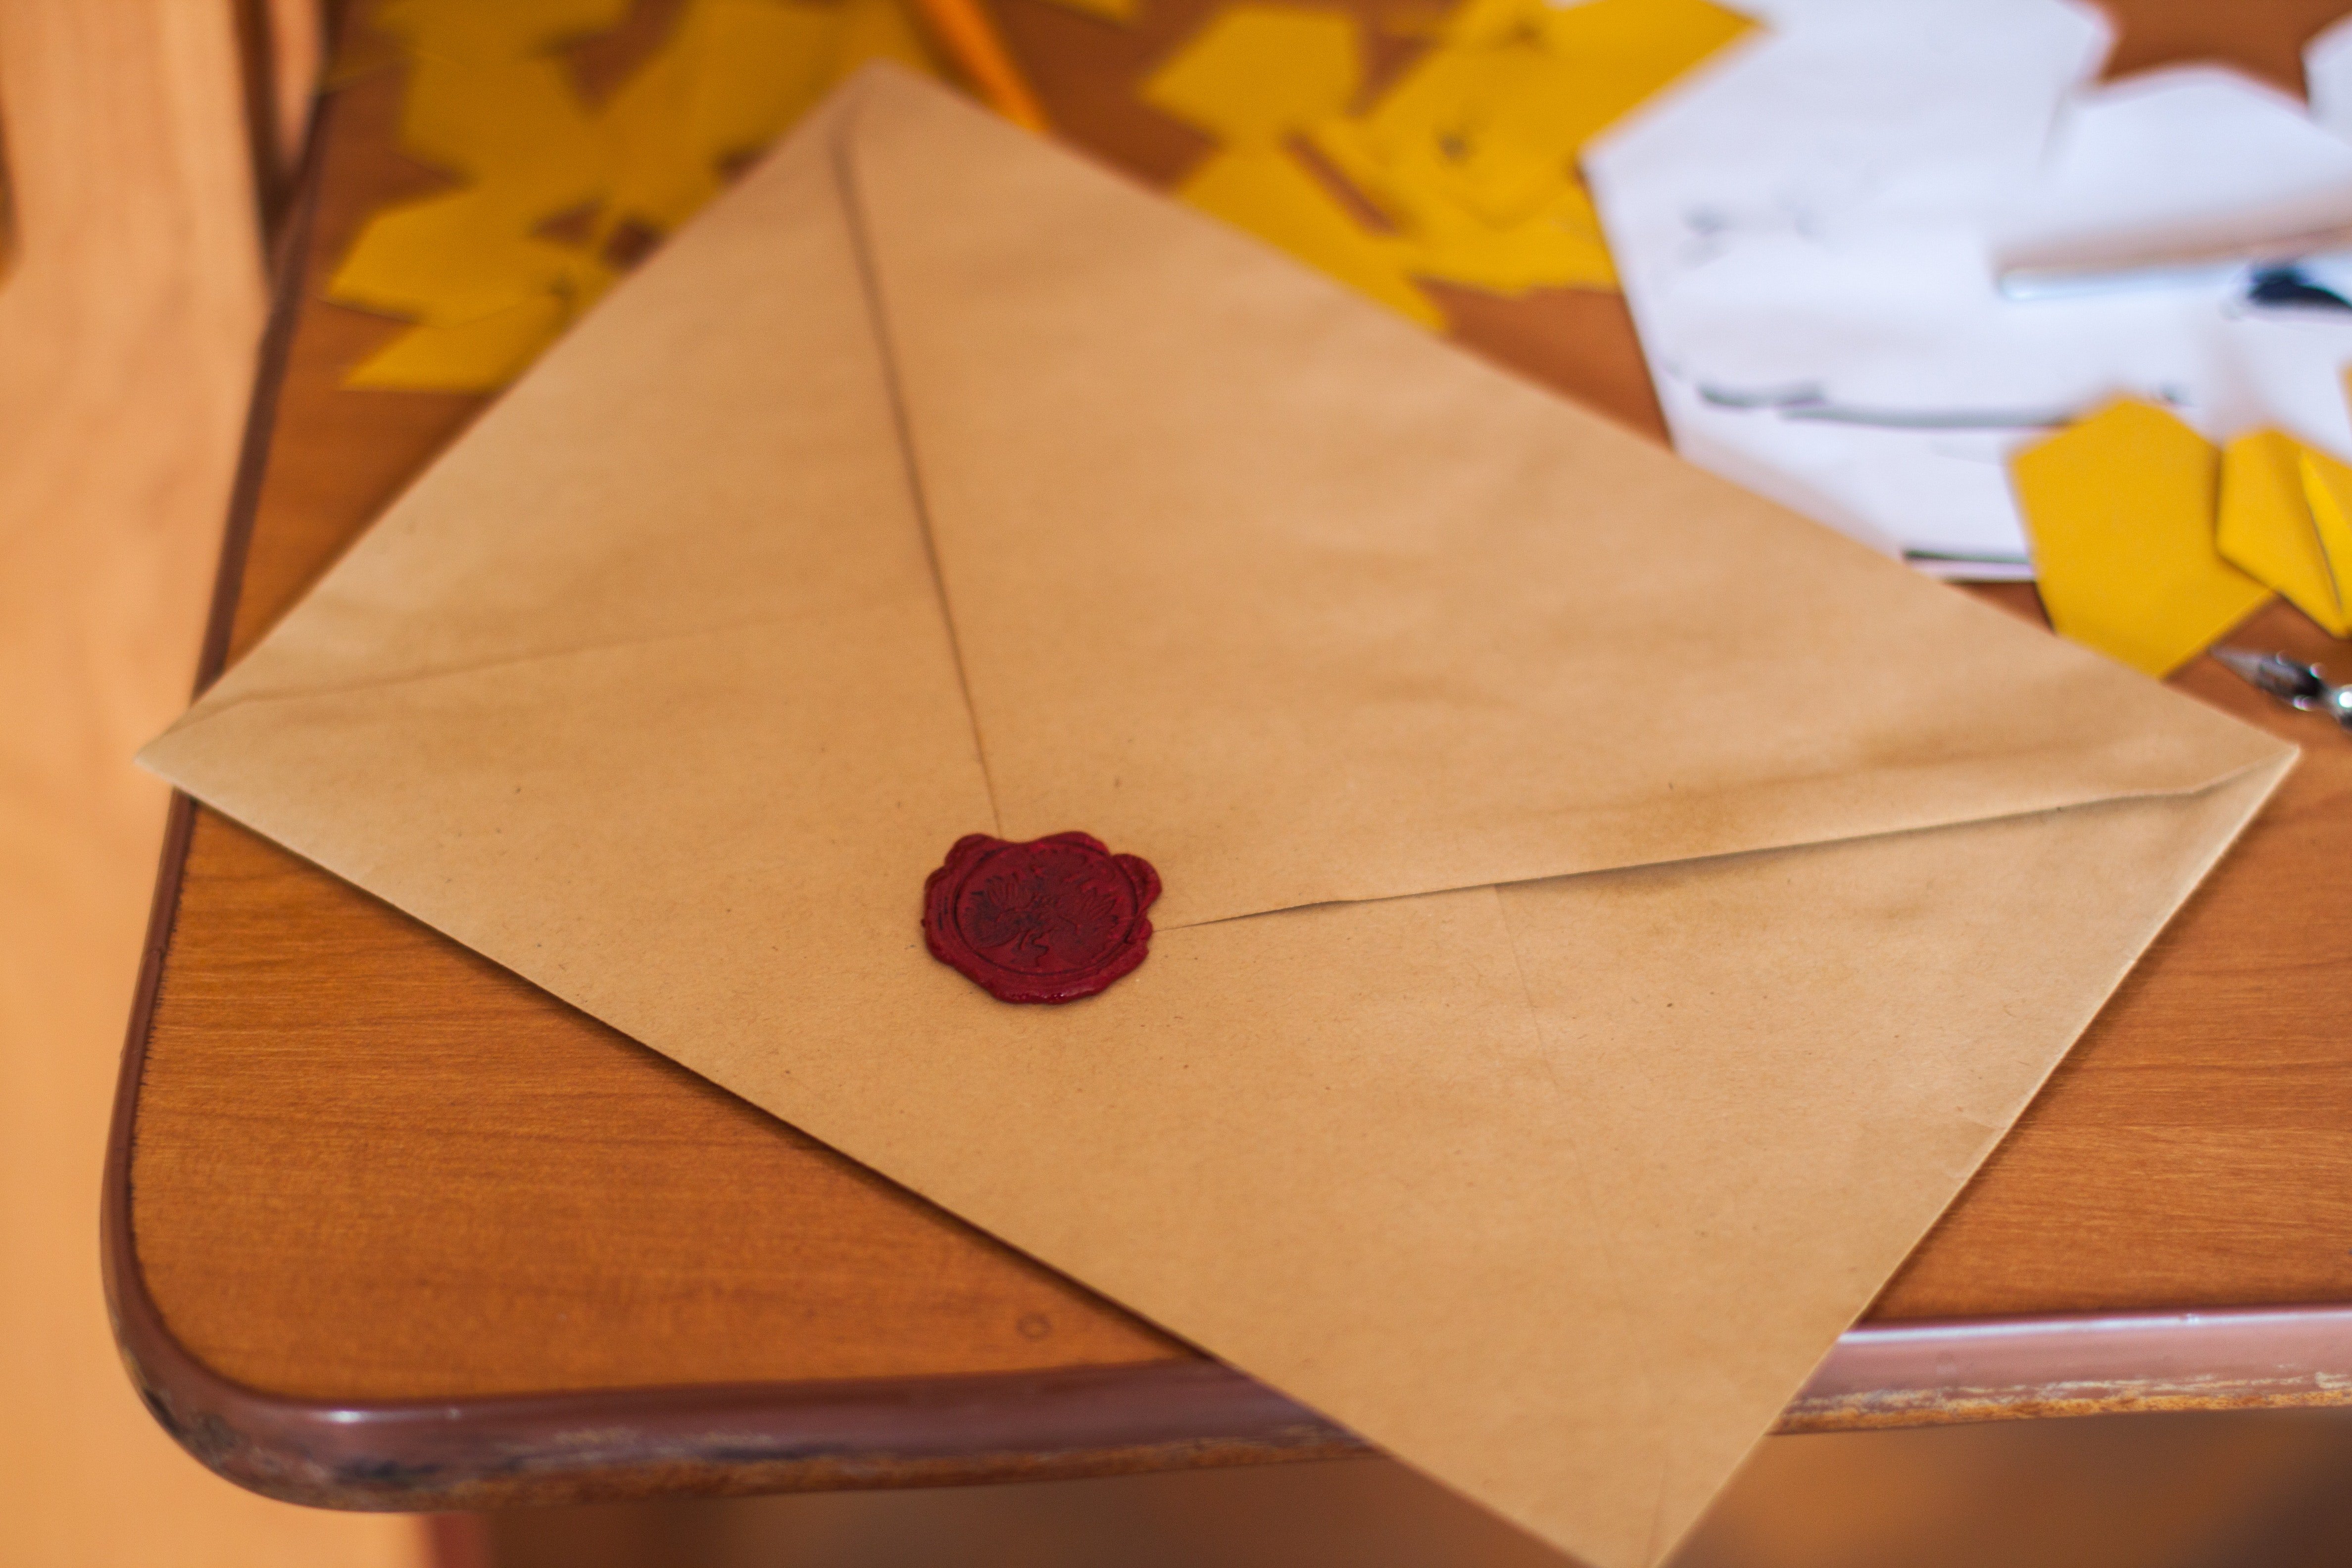 Agnes hatte einen Brief für Liam hinterlassen | Quelle: Pexels